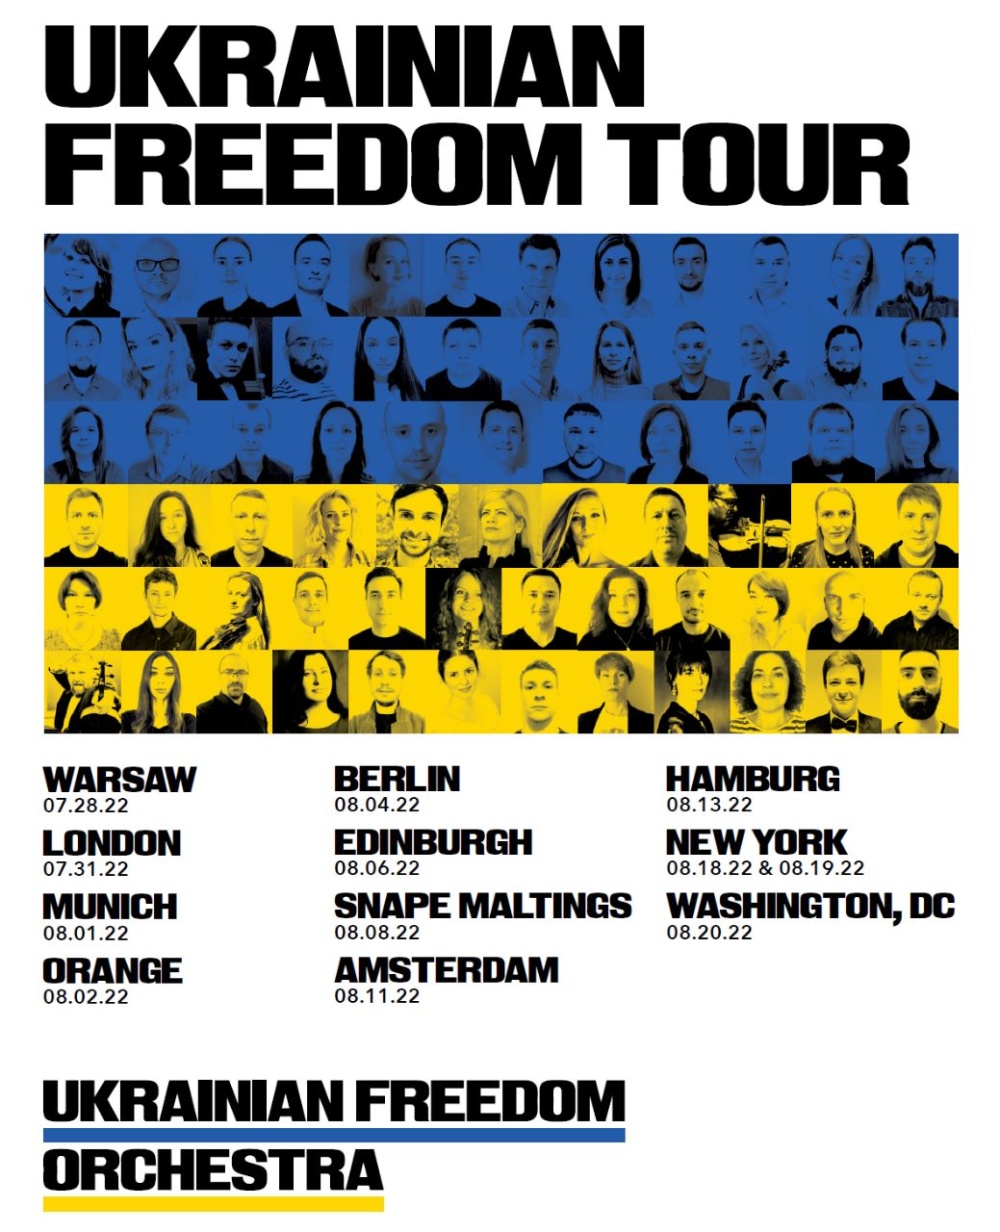 Метрополитен-опера и Польская национальная опера создадут «Украинский оркестр свободы»